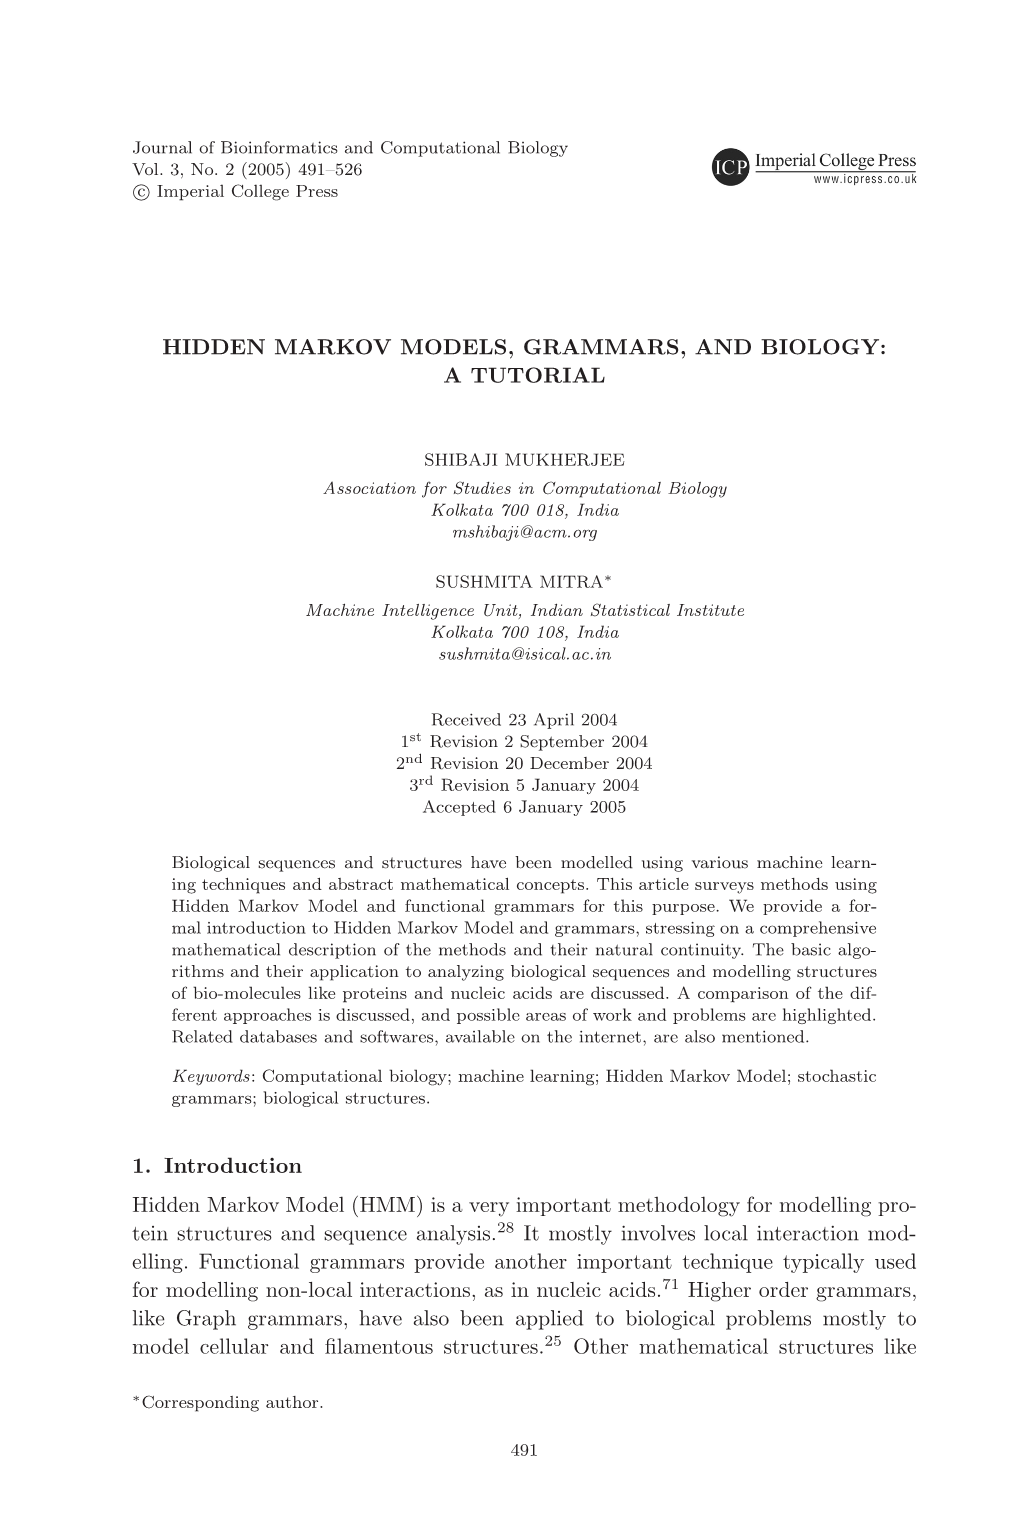 Hidden Markov Models, Grammars, and Biology: a Tutorial 493